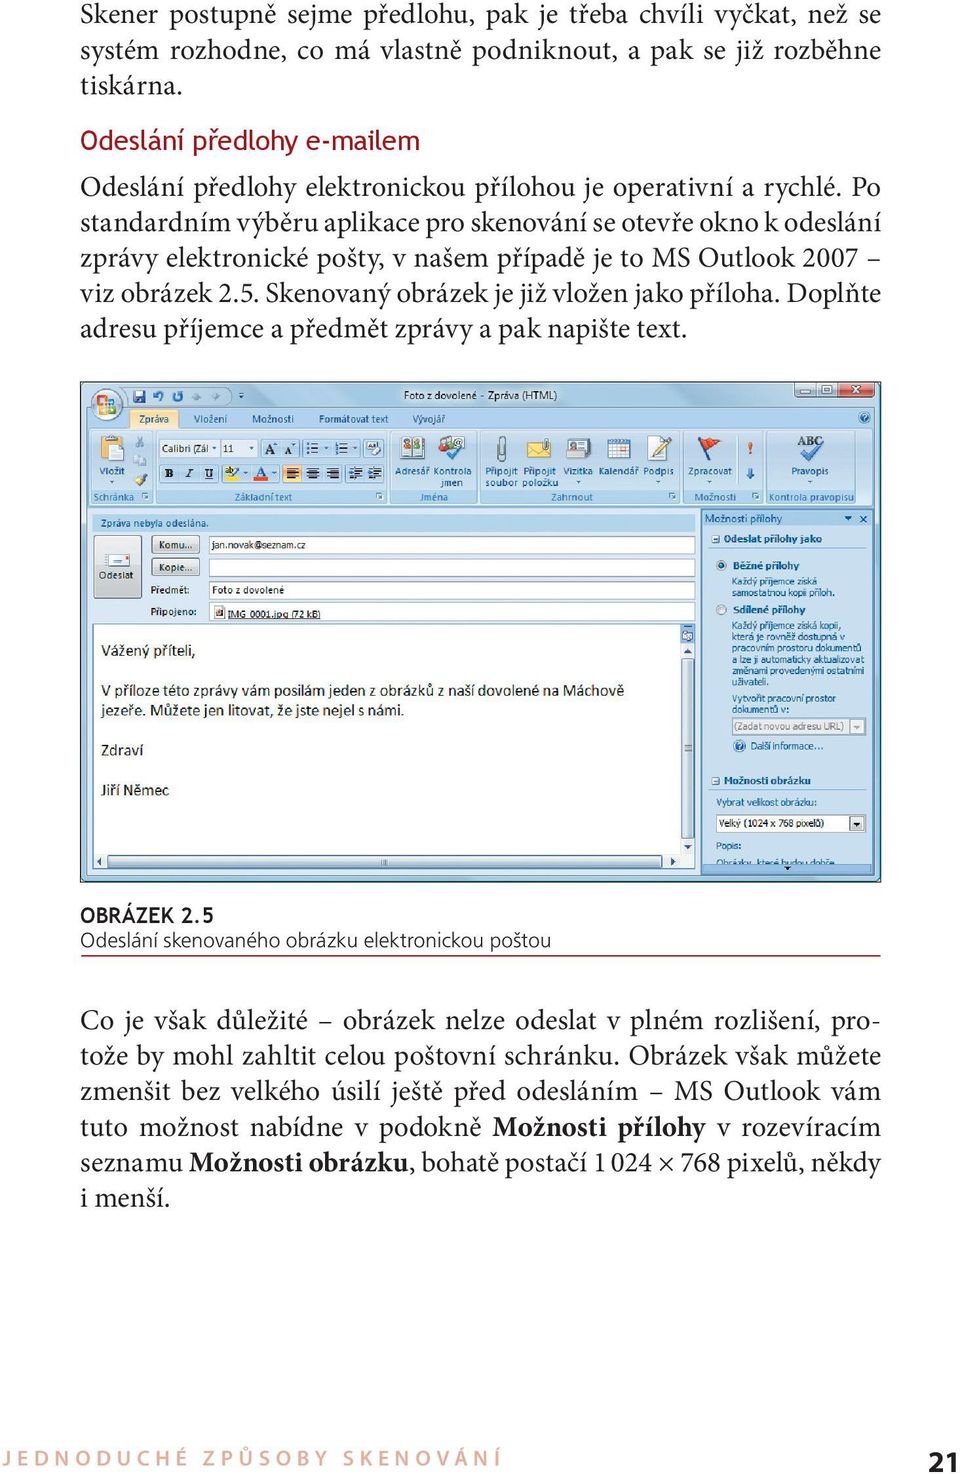 Po standardním výběru aplikace pro skenování se otevře okno k odeslání zprávy elektronické pošty, v našem případě je to MS Outlook 2007 viz obrázek 2.5. Skenovaný obrázek je již vložen jako příloha.